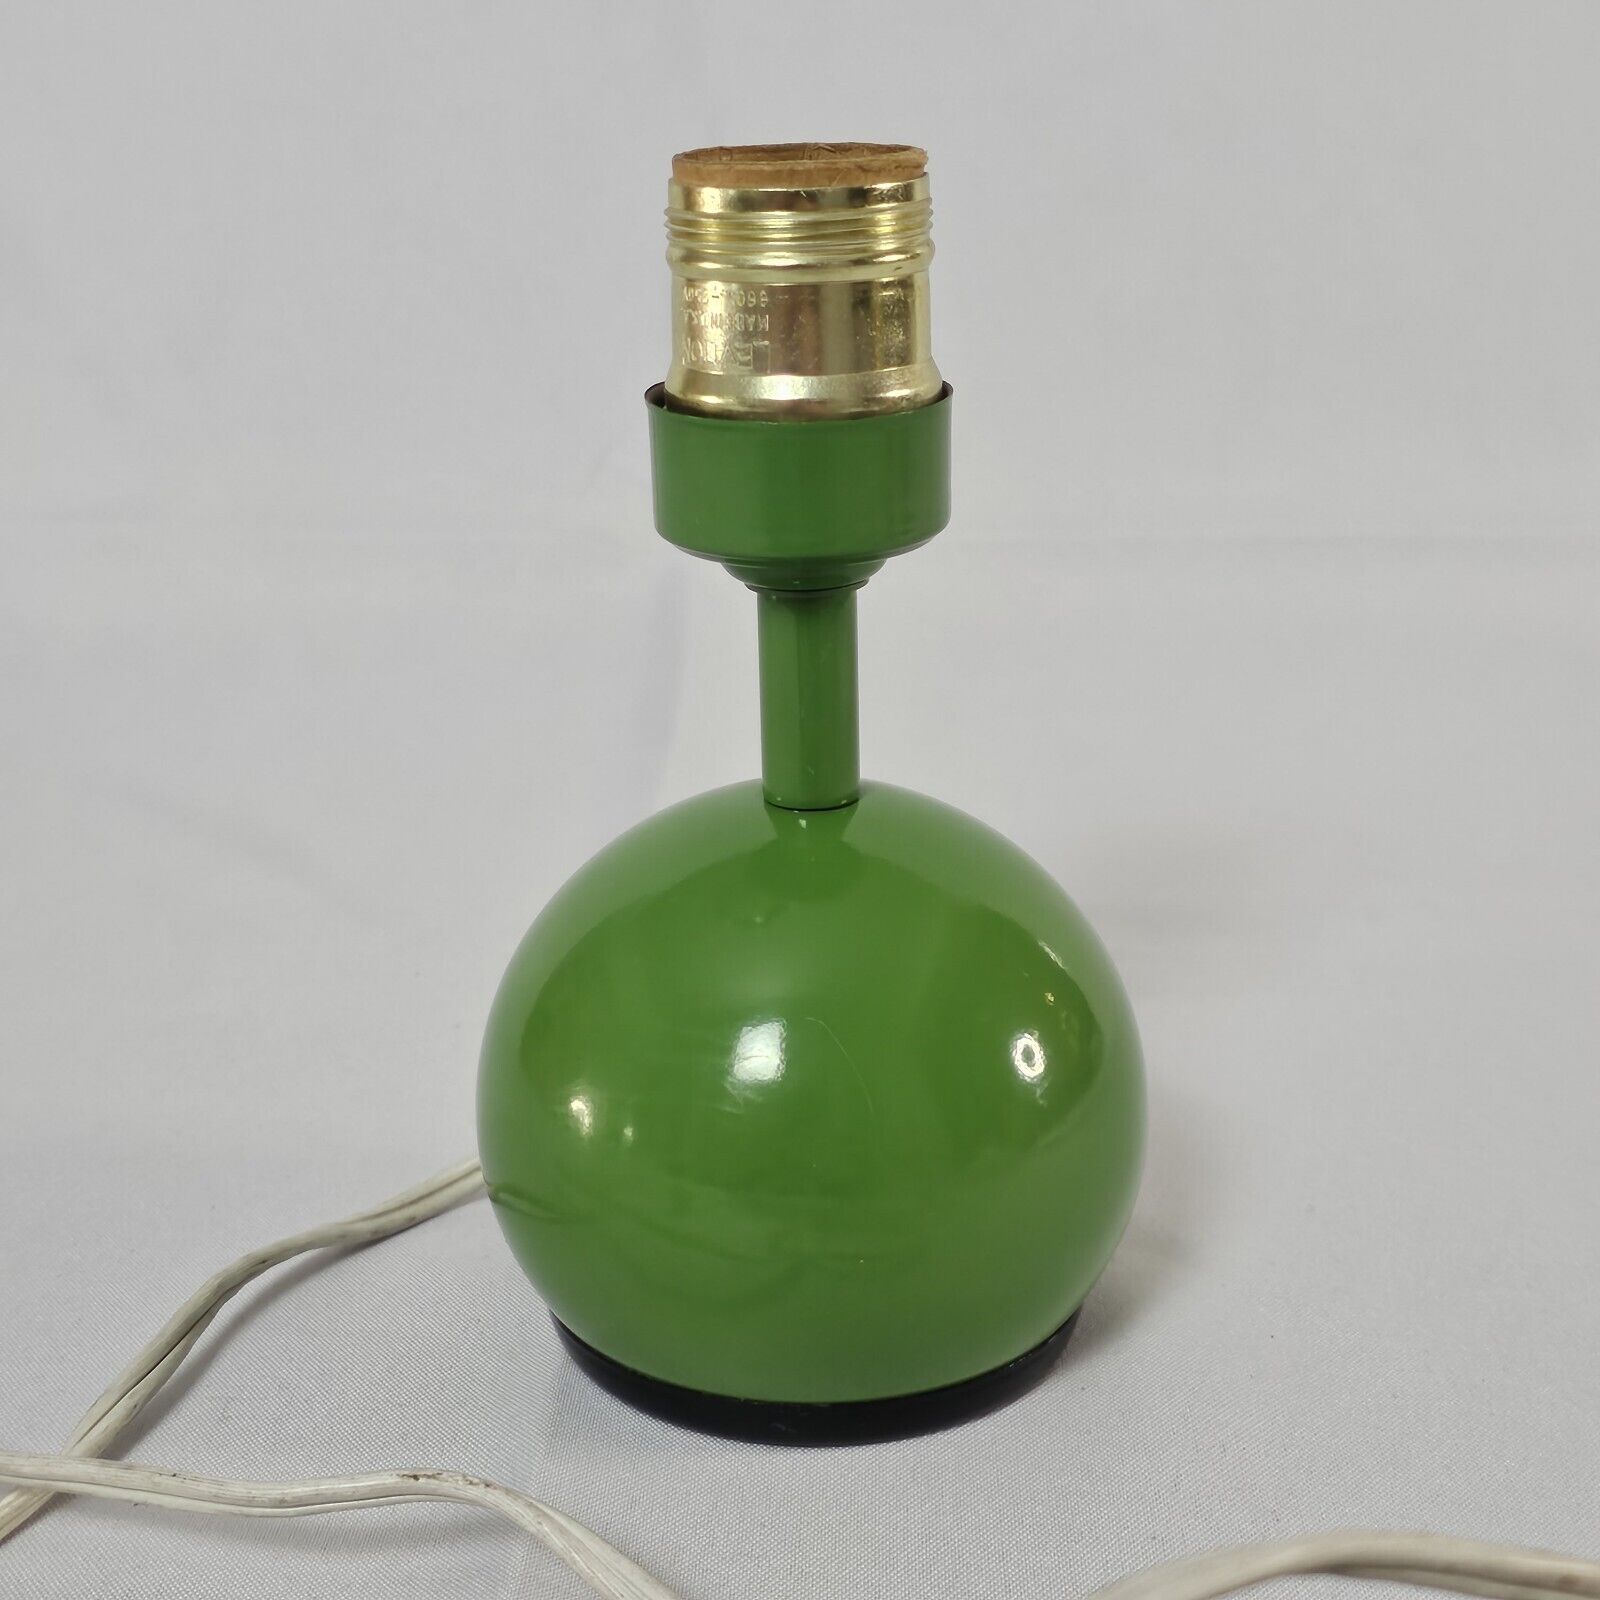 Vintage Underwriters Laboratories Small Green Spherical Lamp Base Works Great 